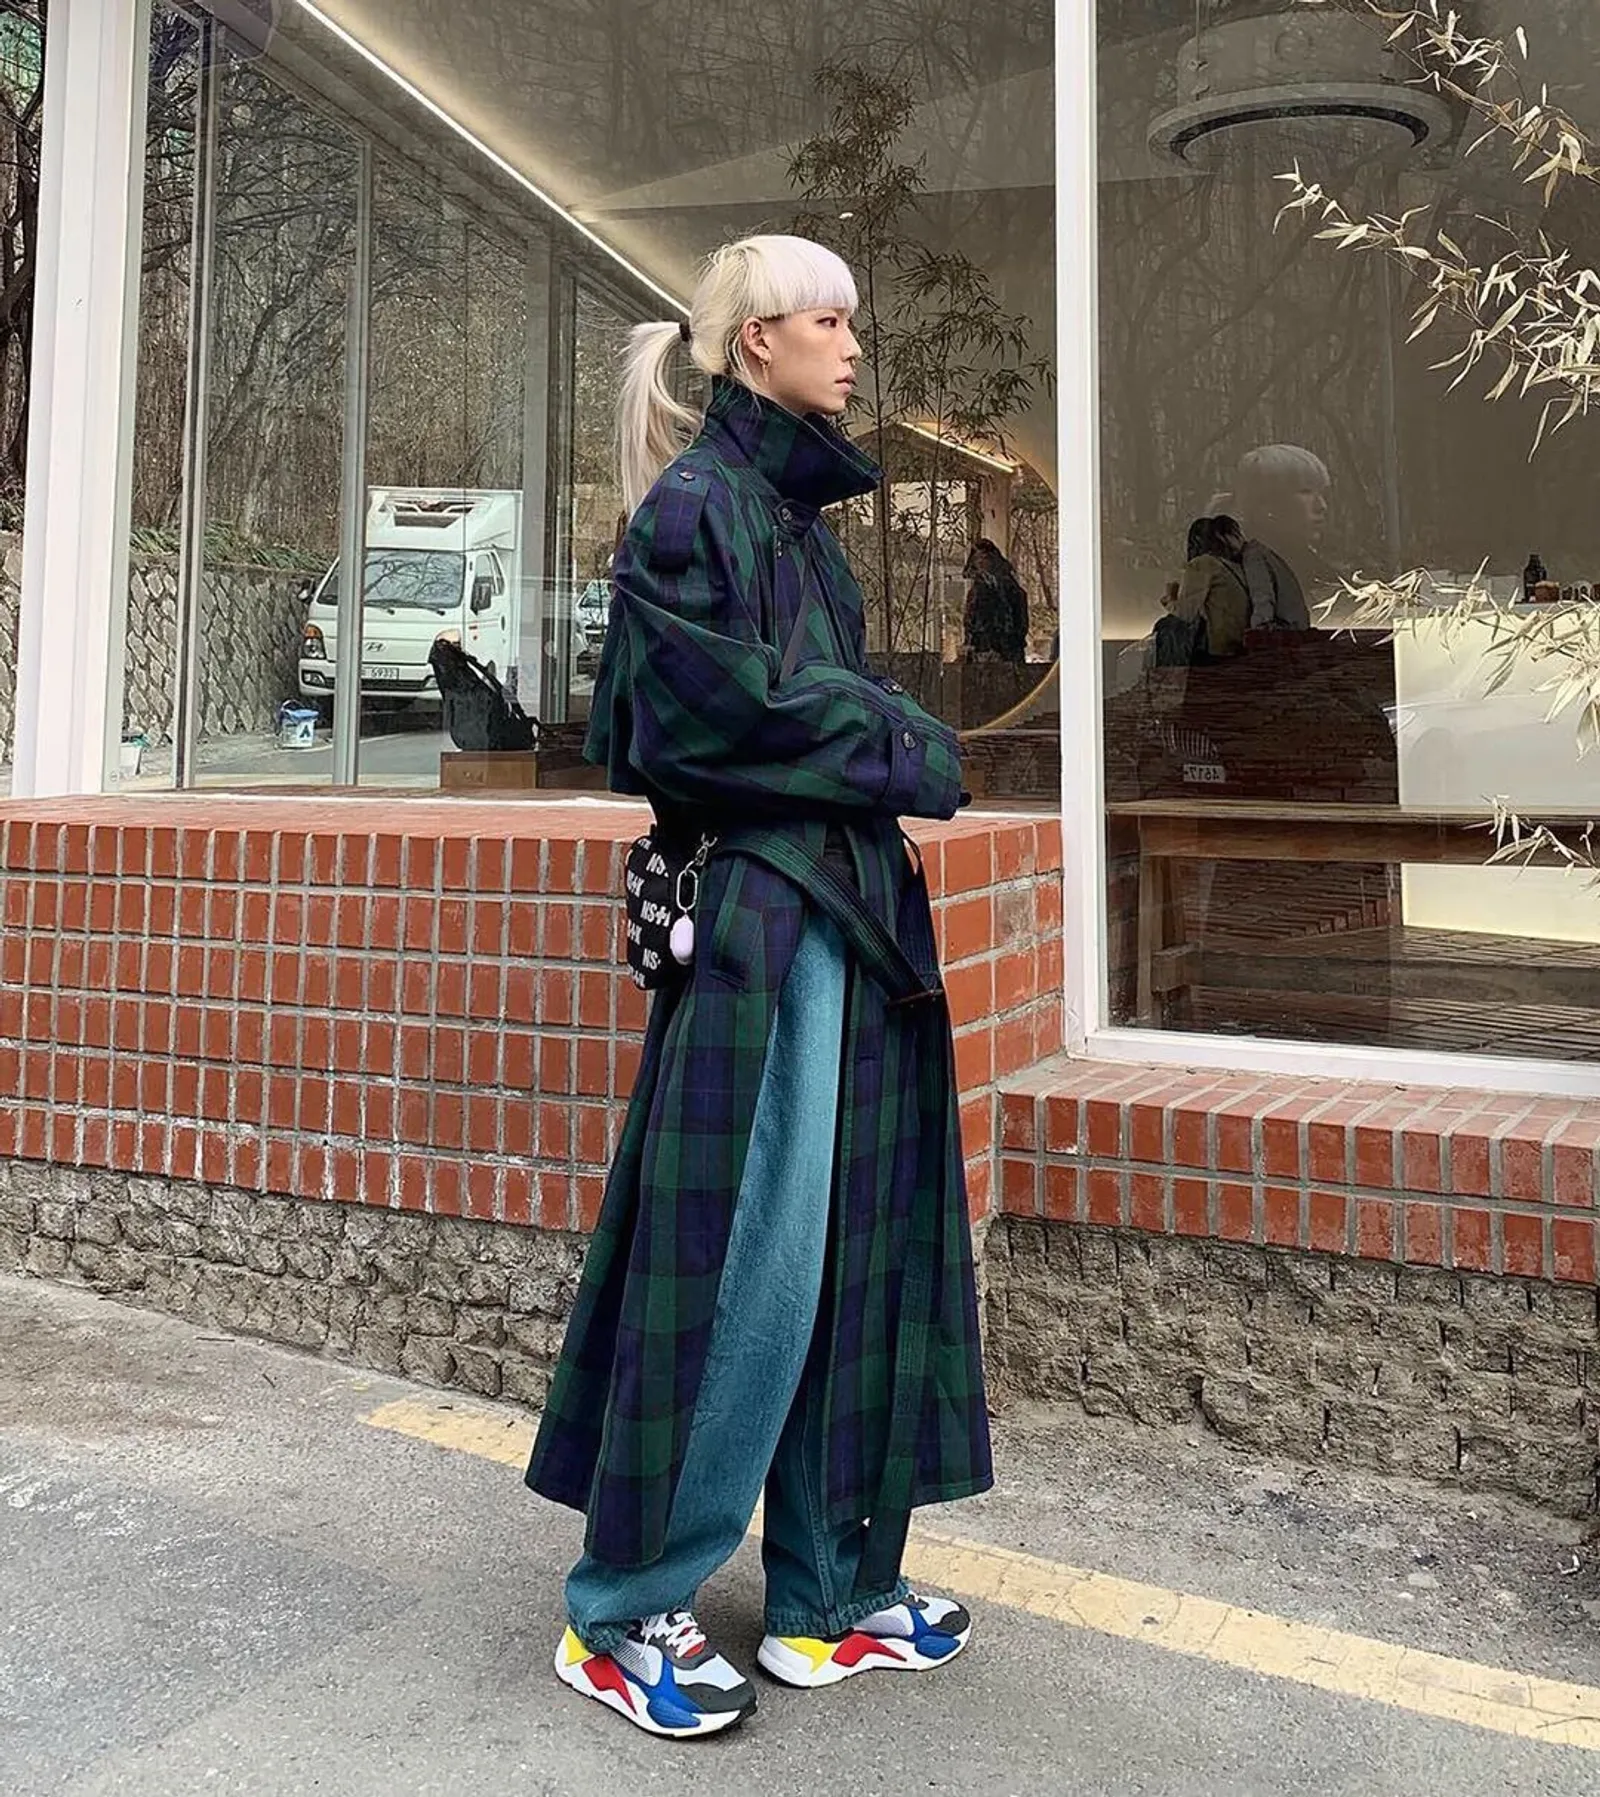 Swag Banget, Ini Trend Fashion Korea Selatan di Tahun 2020